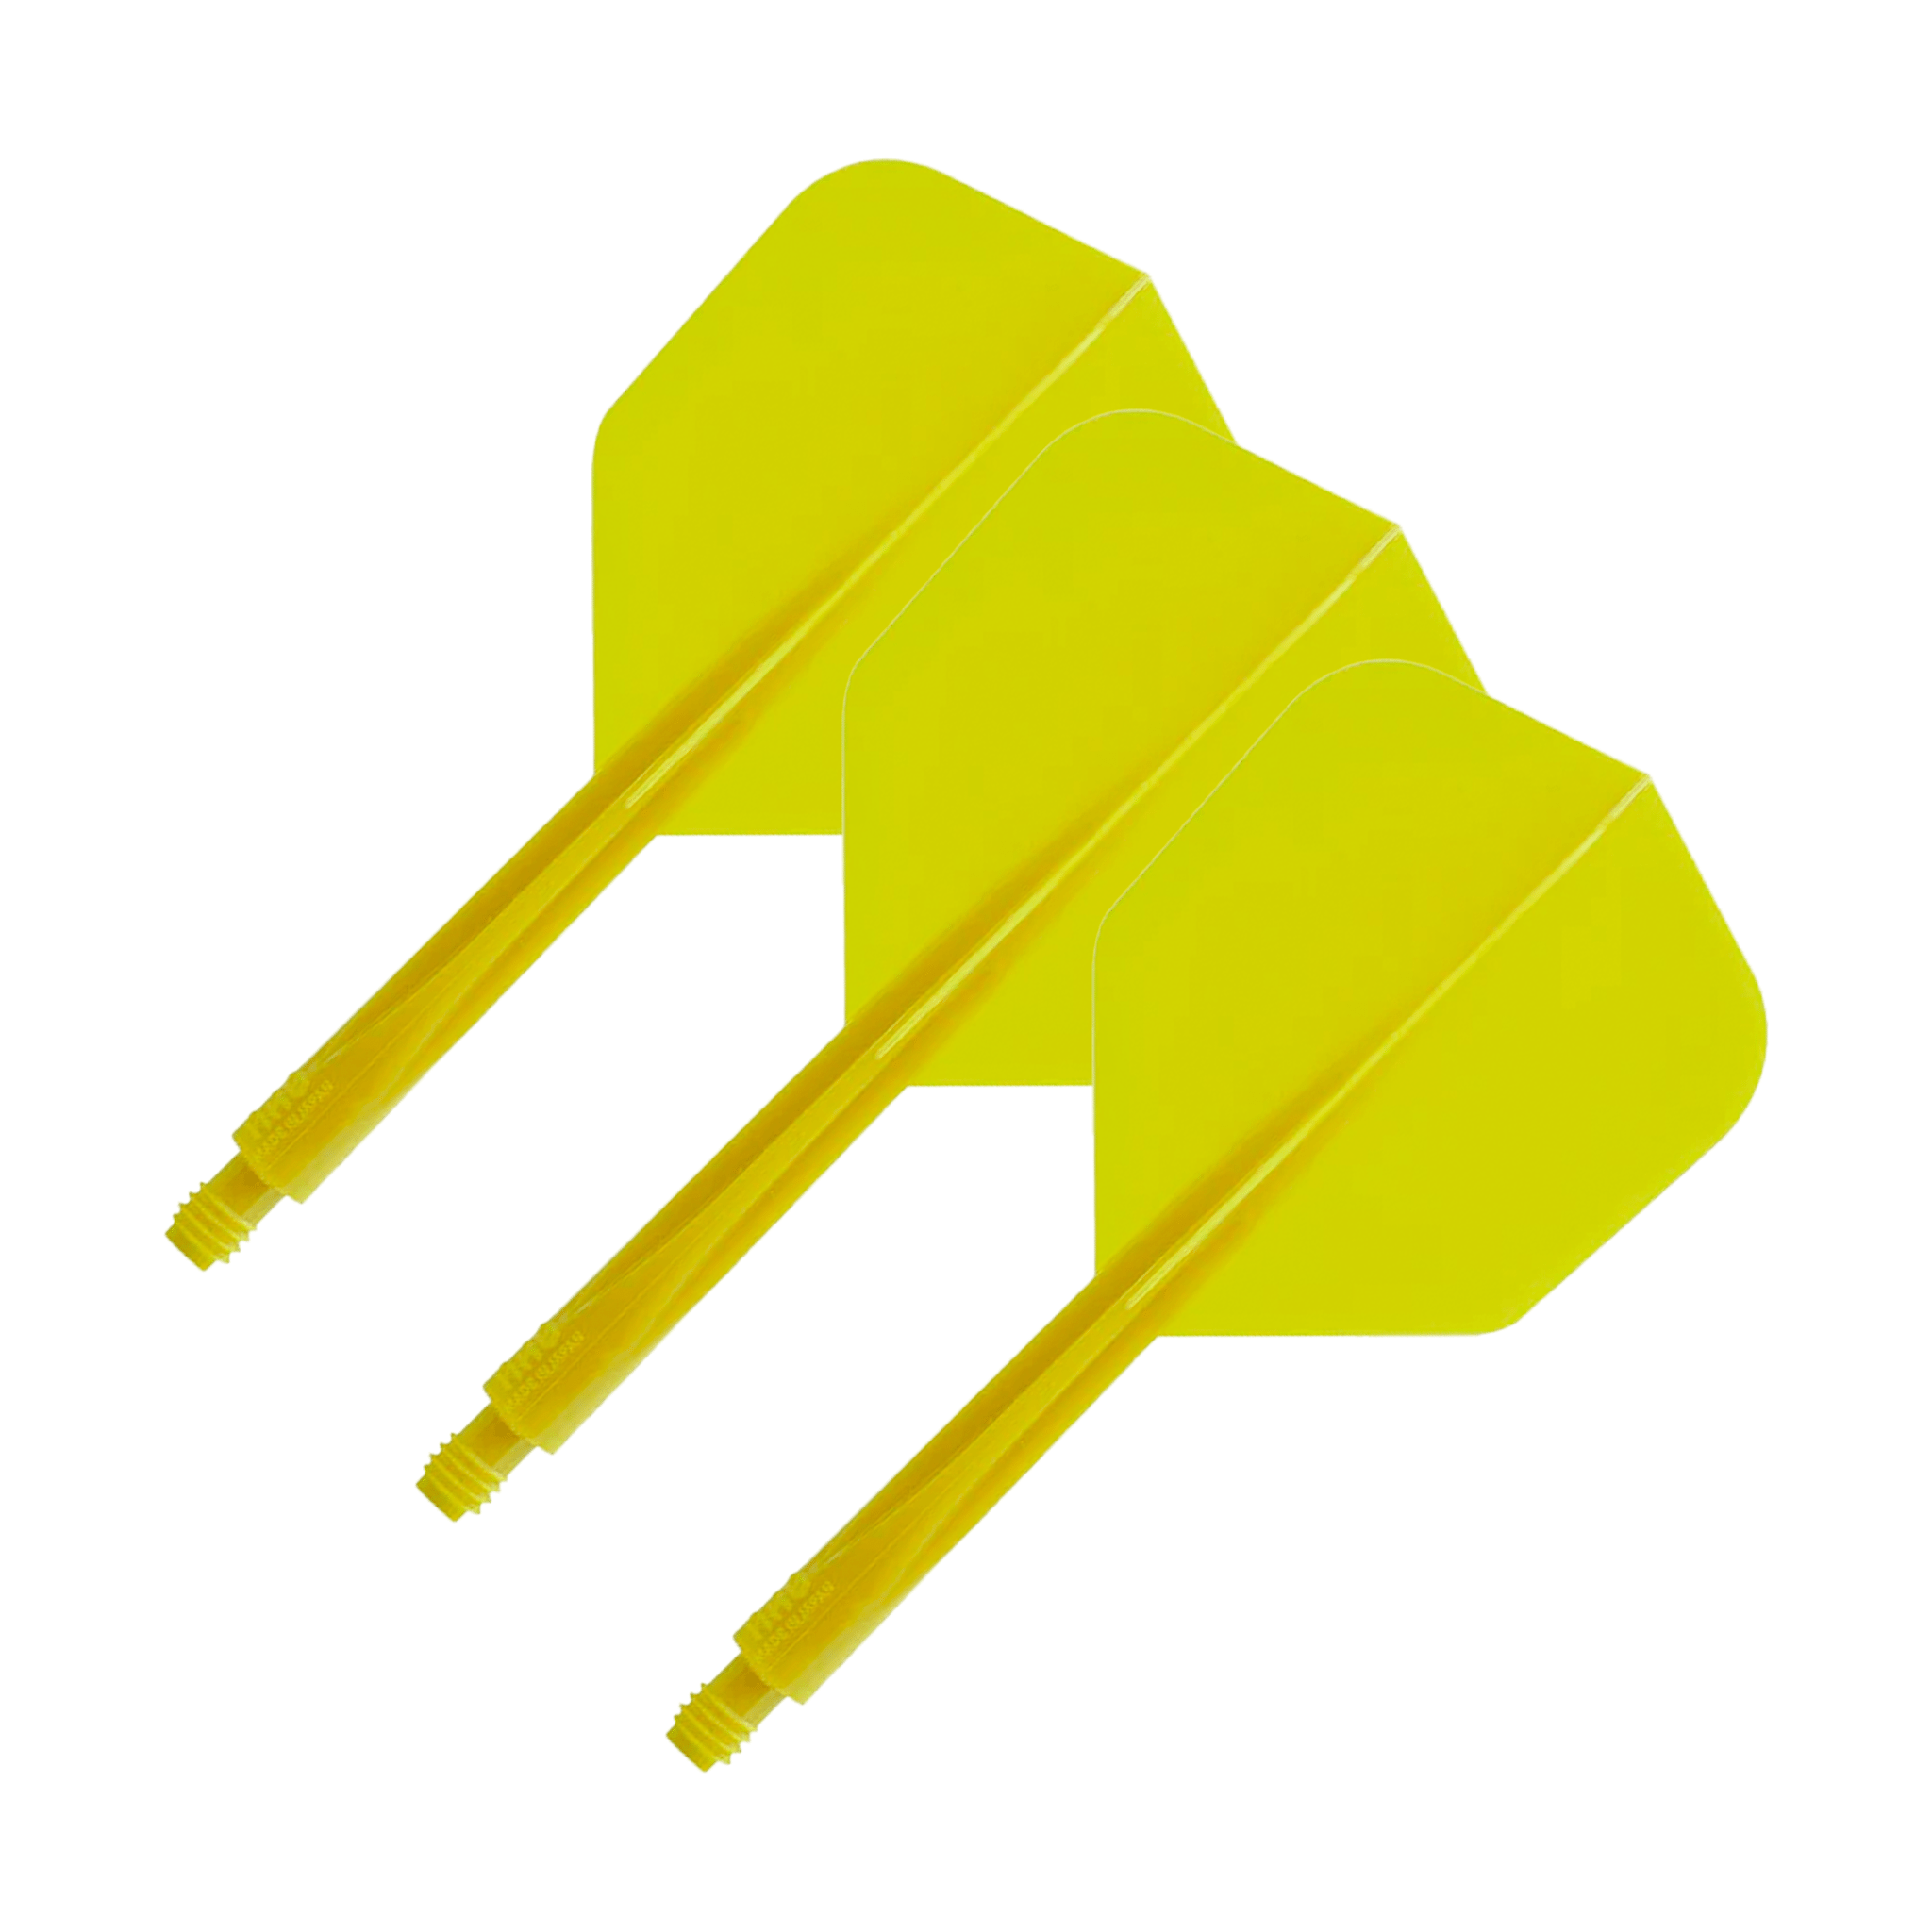 Condor Axe - Resin Dart Shafts Standard / Short (21.5mm) / Yellow Shafts